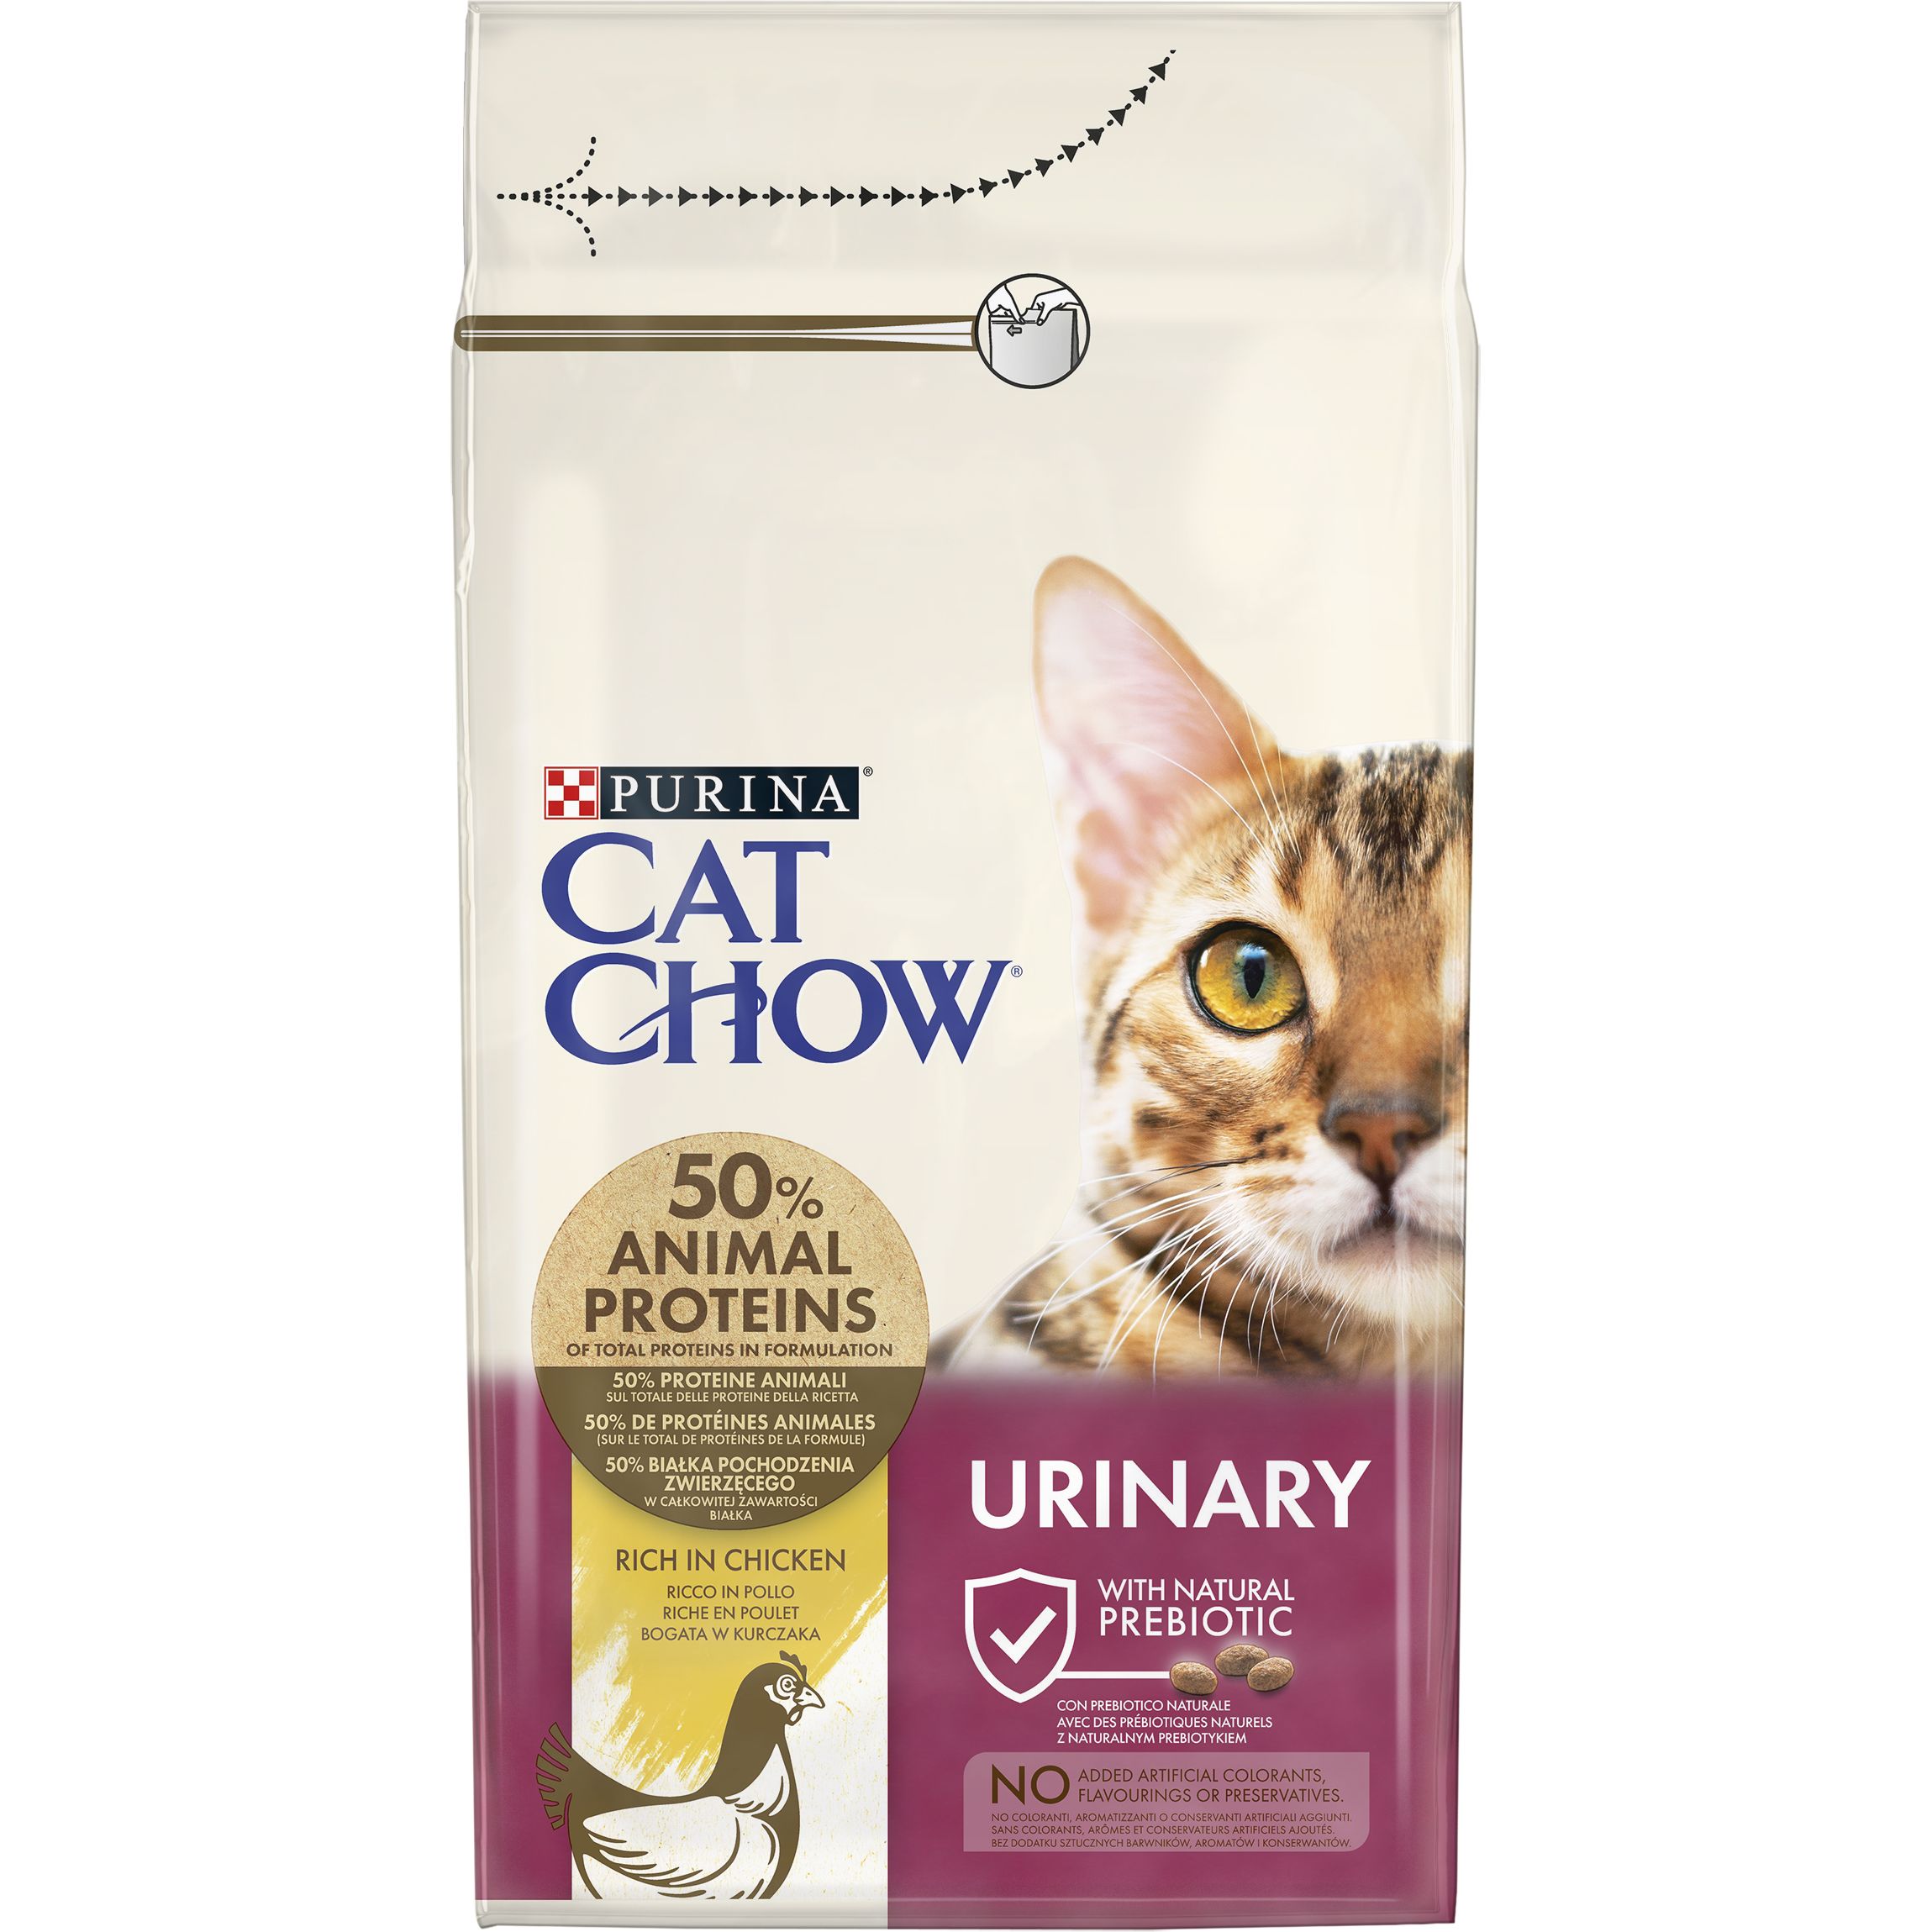 Сухой корм для кошек для поддержания здоровья мочевыводящей системы Cat Chow Urinary Tract Health с курицей 1.5 кг - фото 2